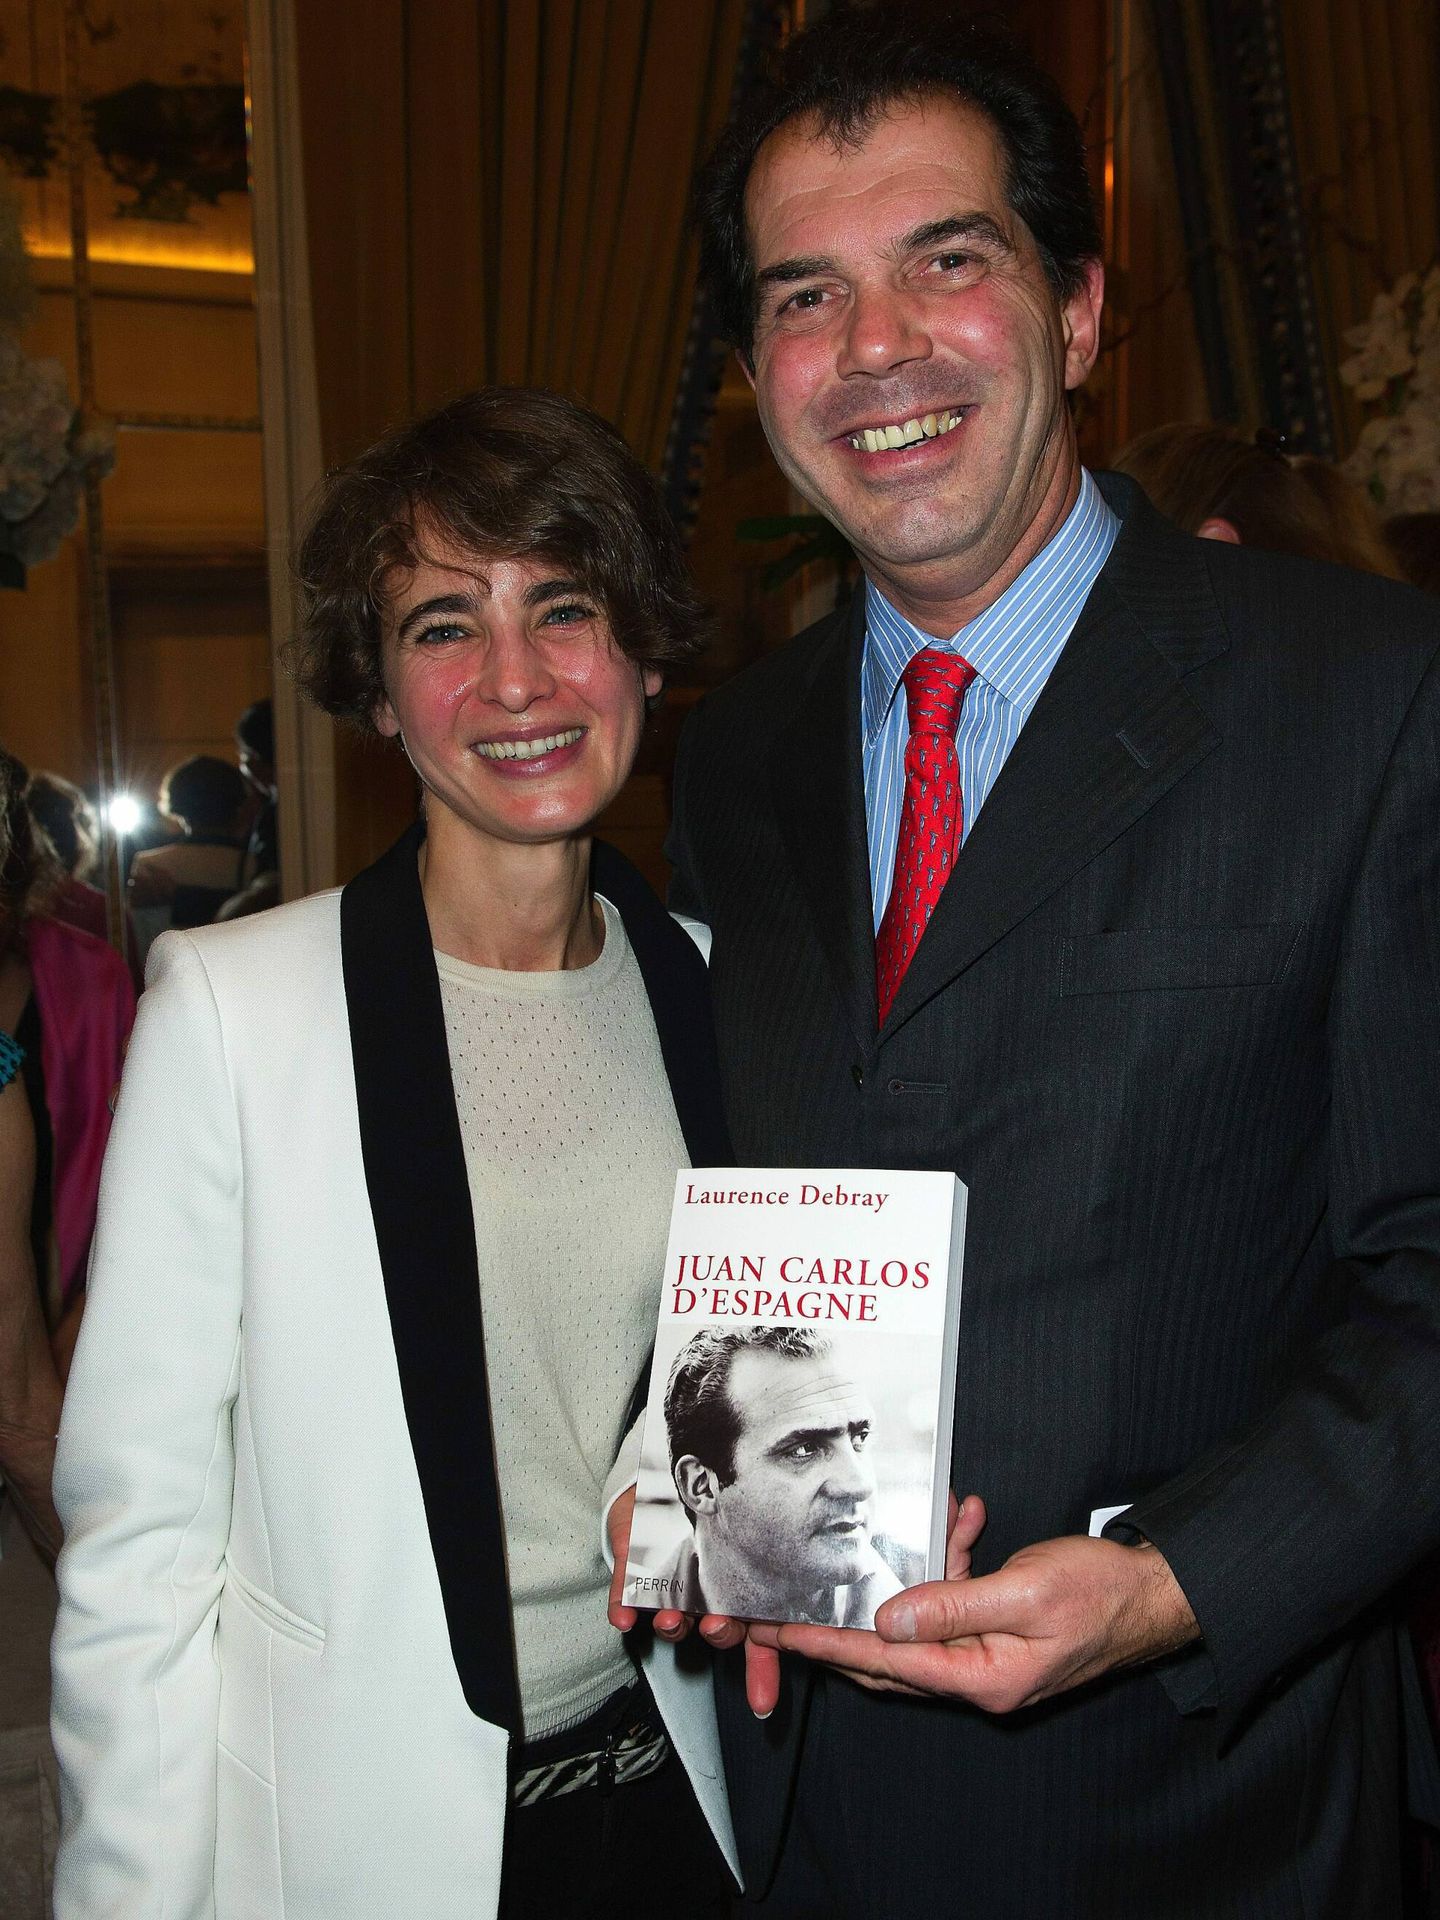 La autora, presentando uno de sus libros sobre el rey Juan Carlos con Charles Emmanuel Borbón de Parma en 2013. (Cordon Press)